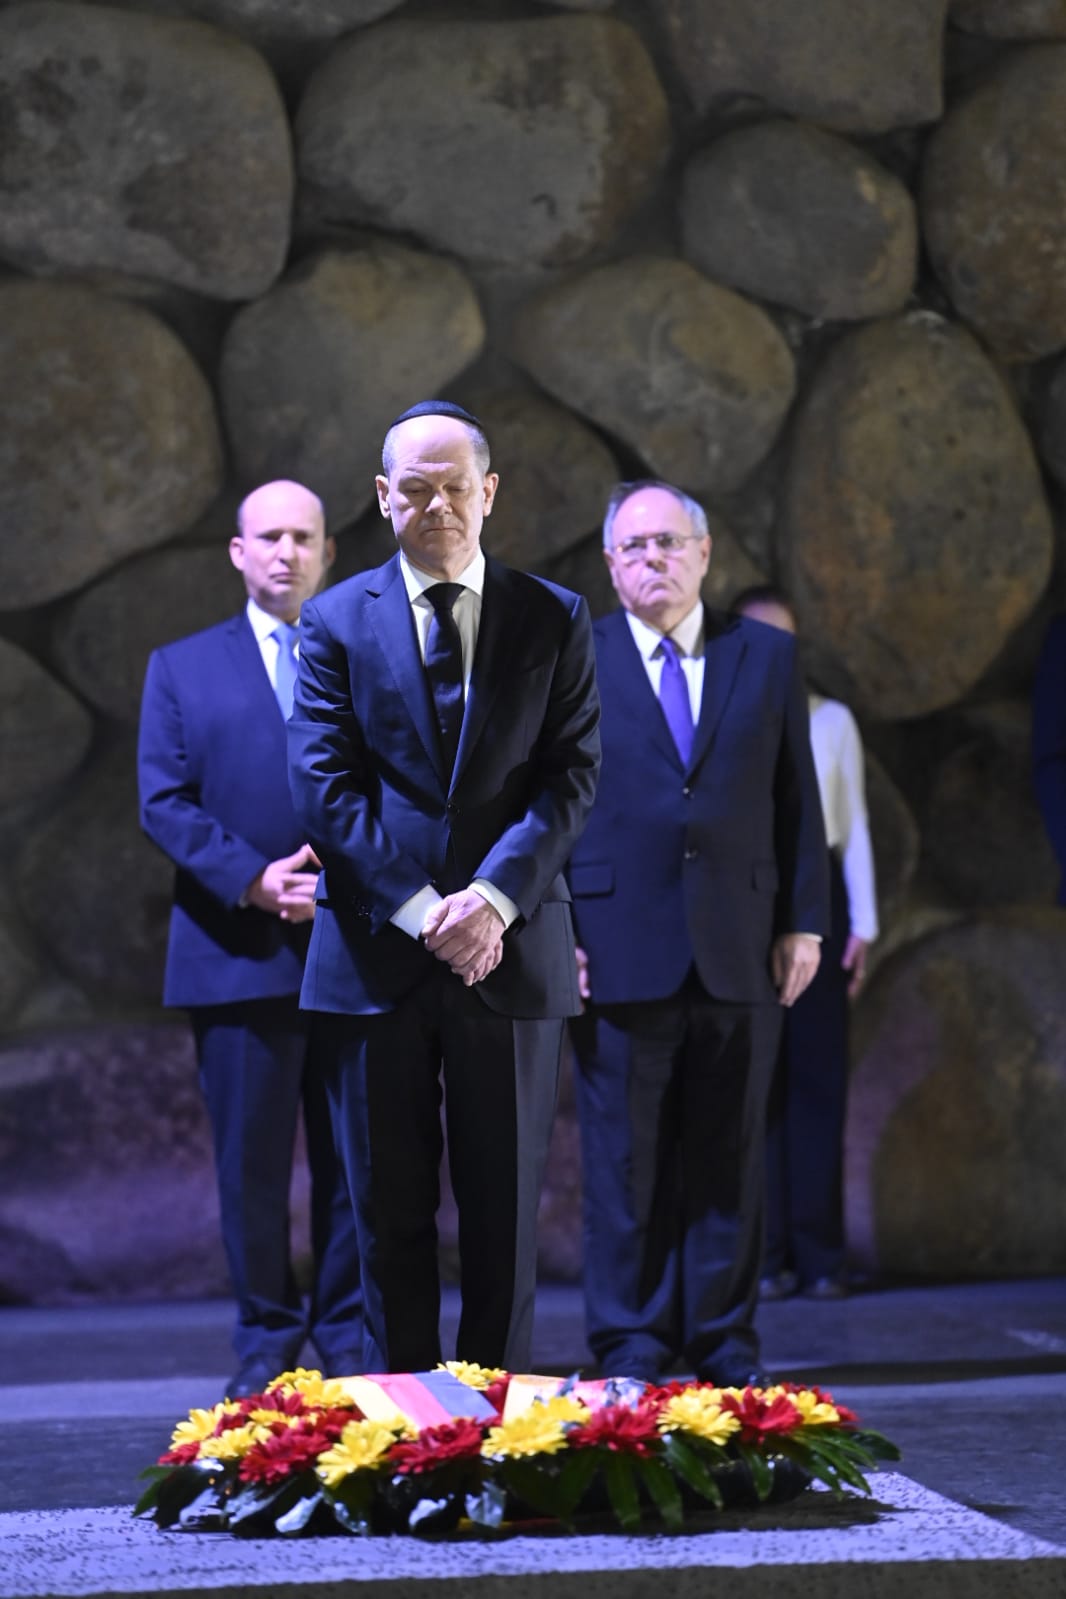 קנצלר גרמניה אולף שולץ בטקס הנחת זר לזכר ששת המיליונים שנרצחו בשואה באוהל יזכור